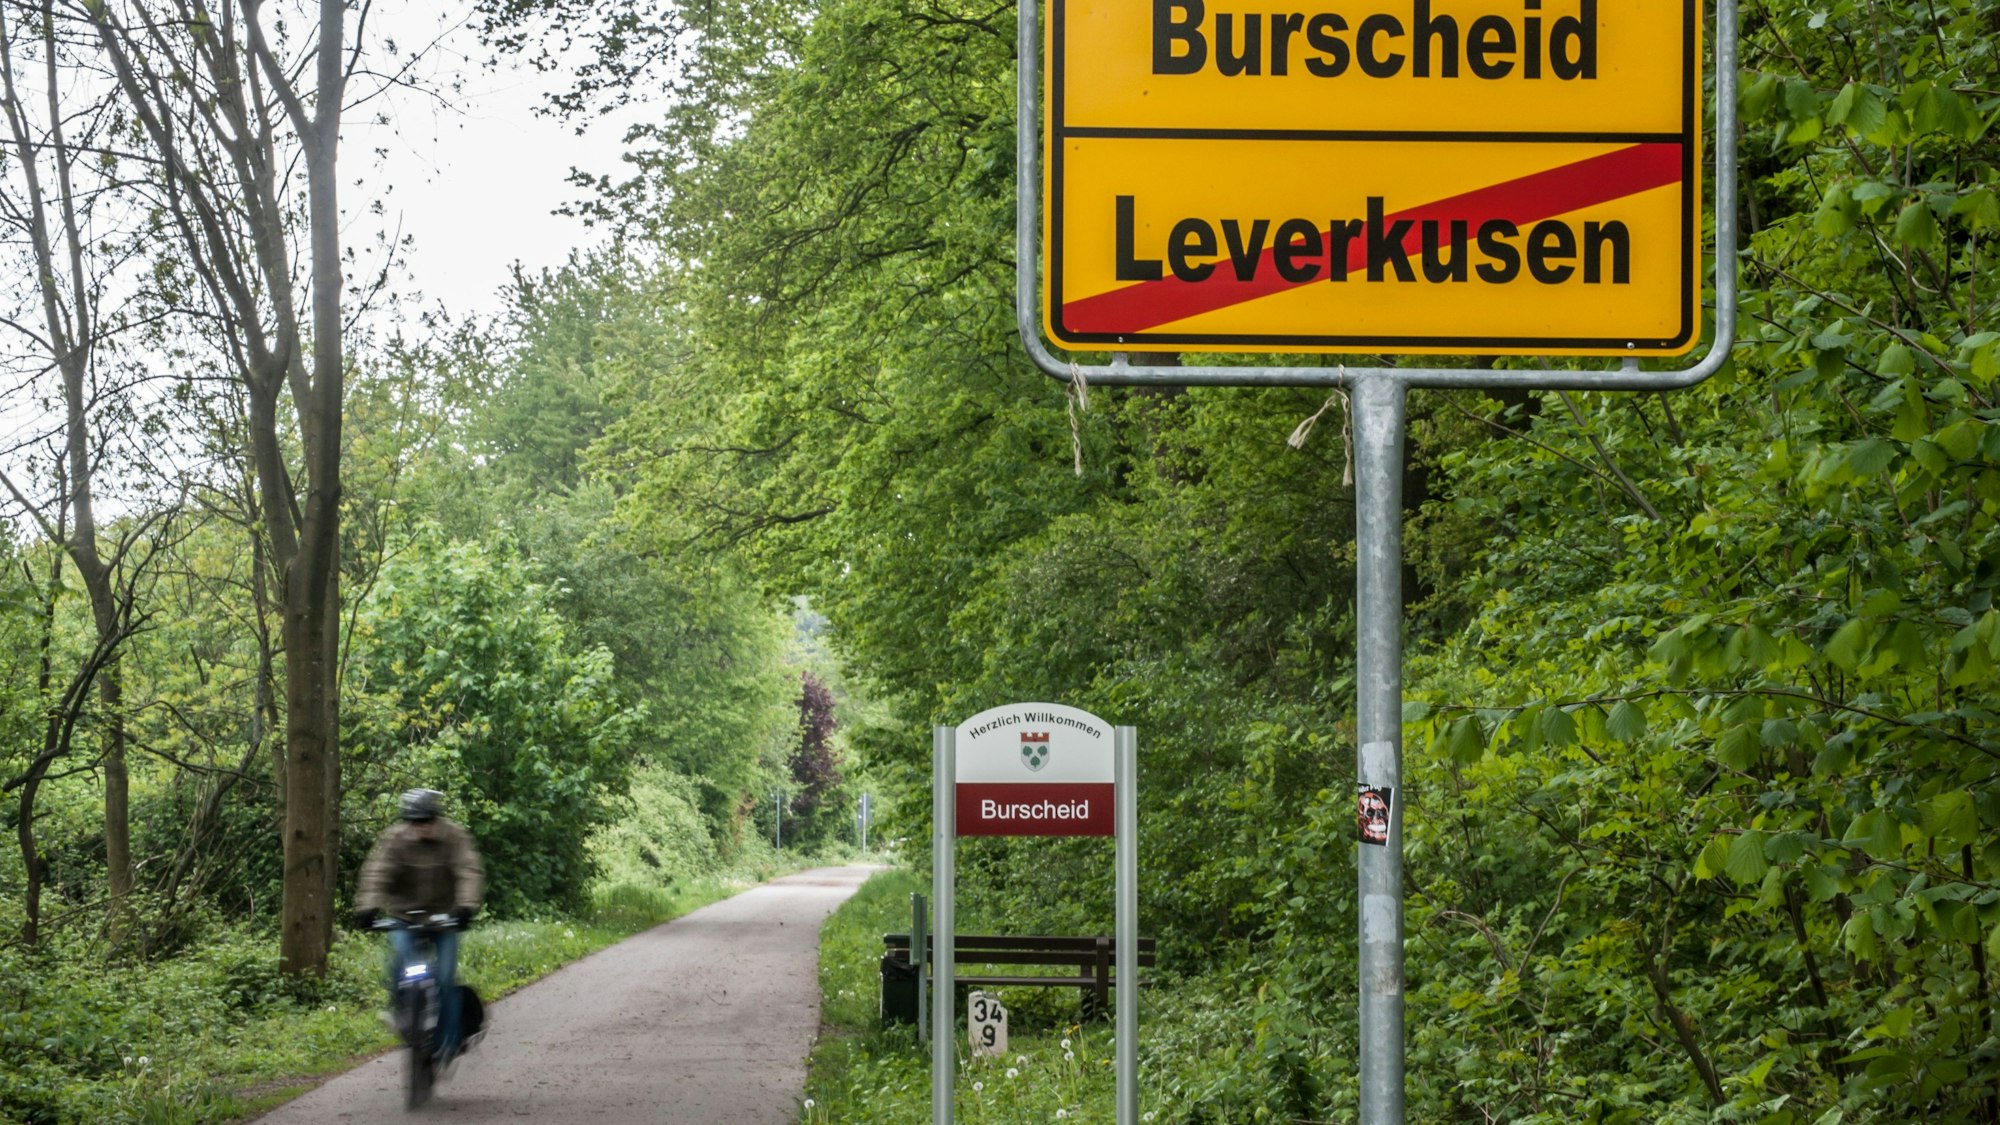 Ein Radler auf der Balkantrasse an der Grenze zwischen Leverkusen und Burscheid